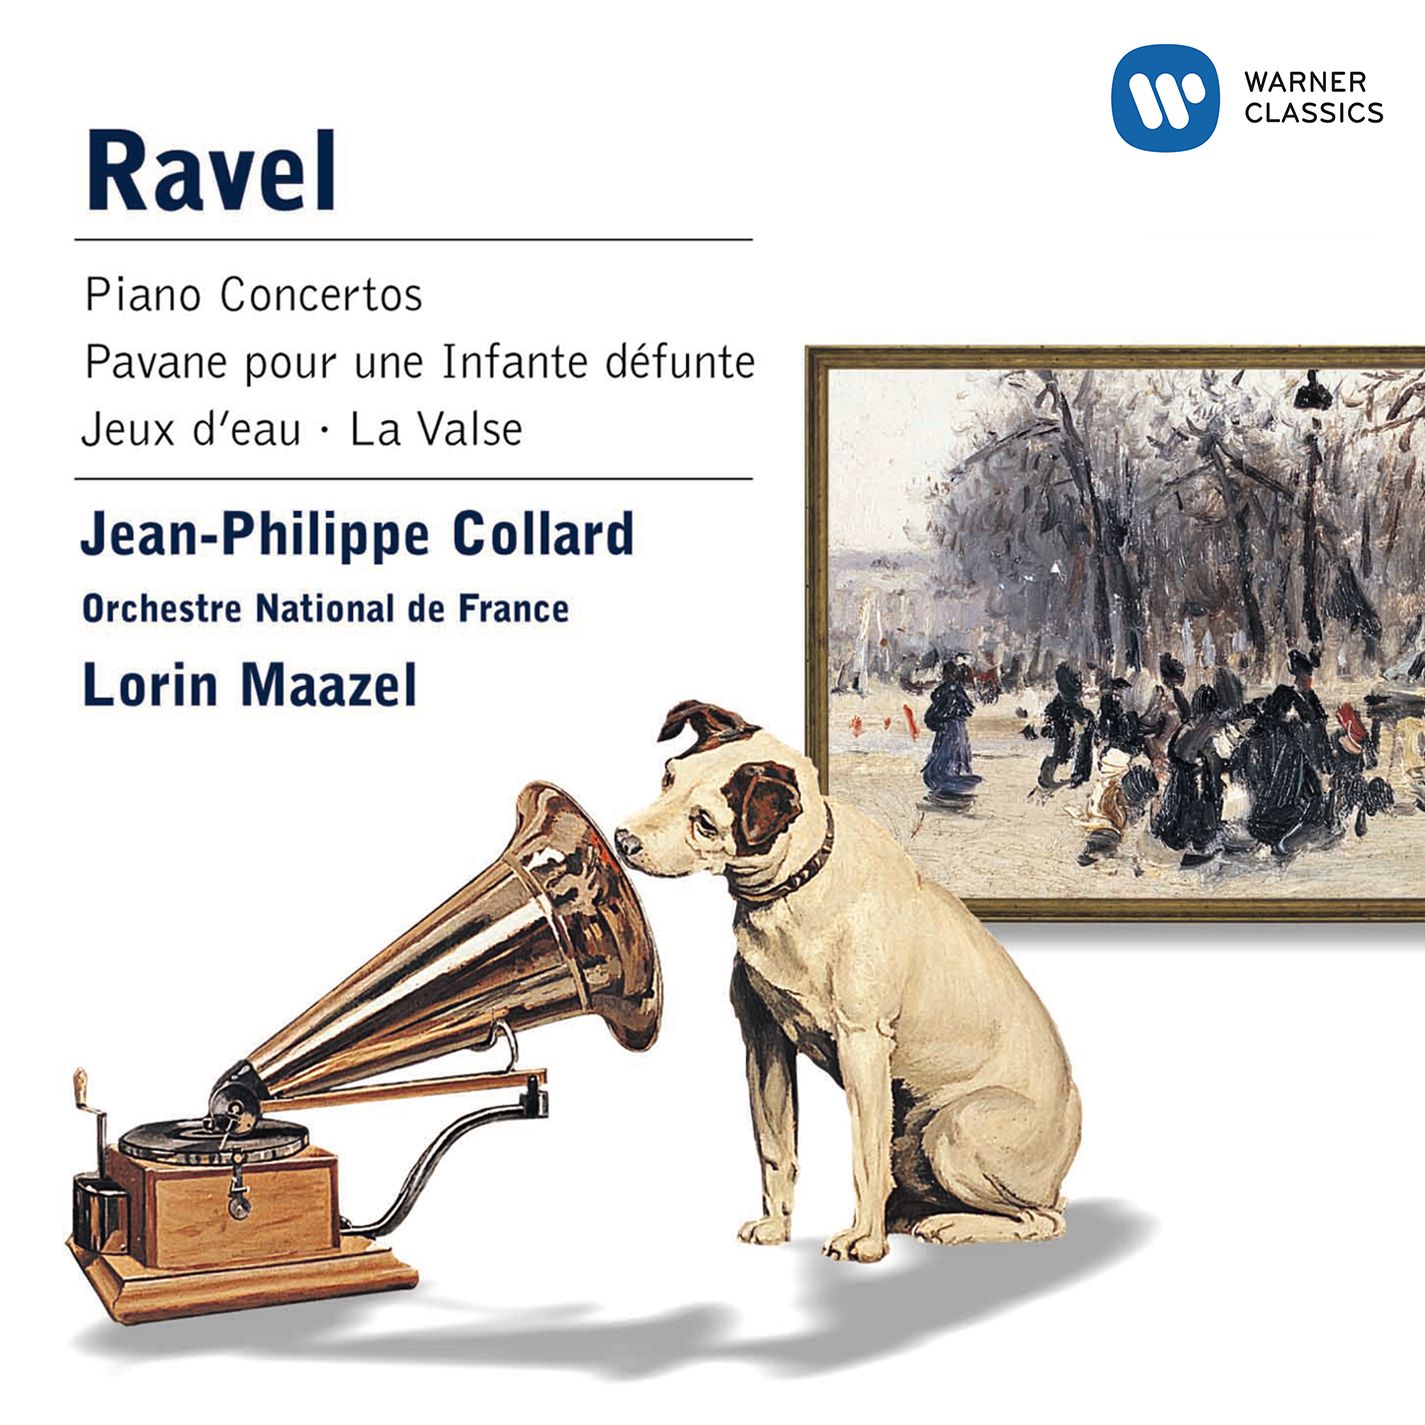 Ravel: Piano Concertos, Pavane, Jeux d'eau, La Valse